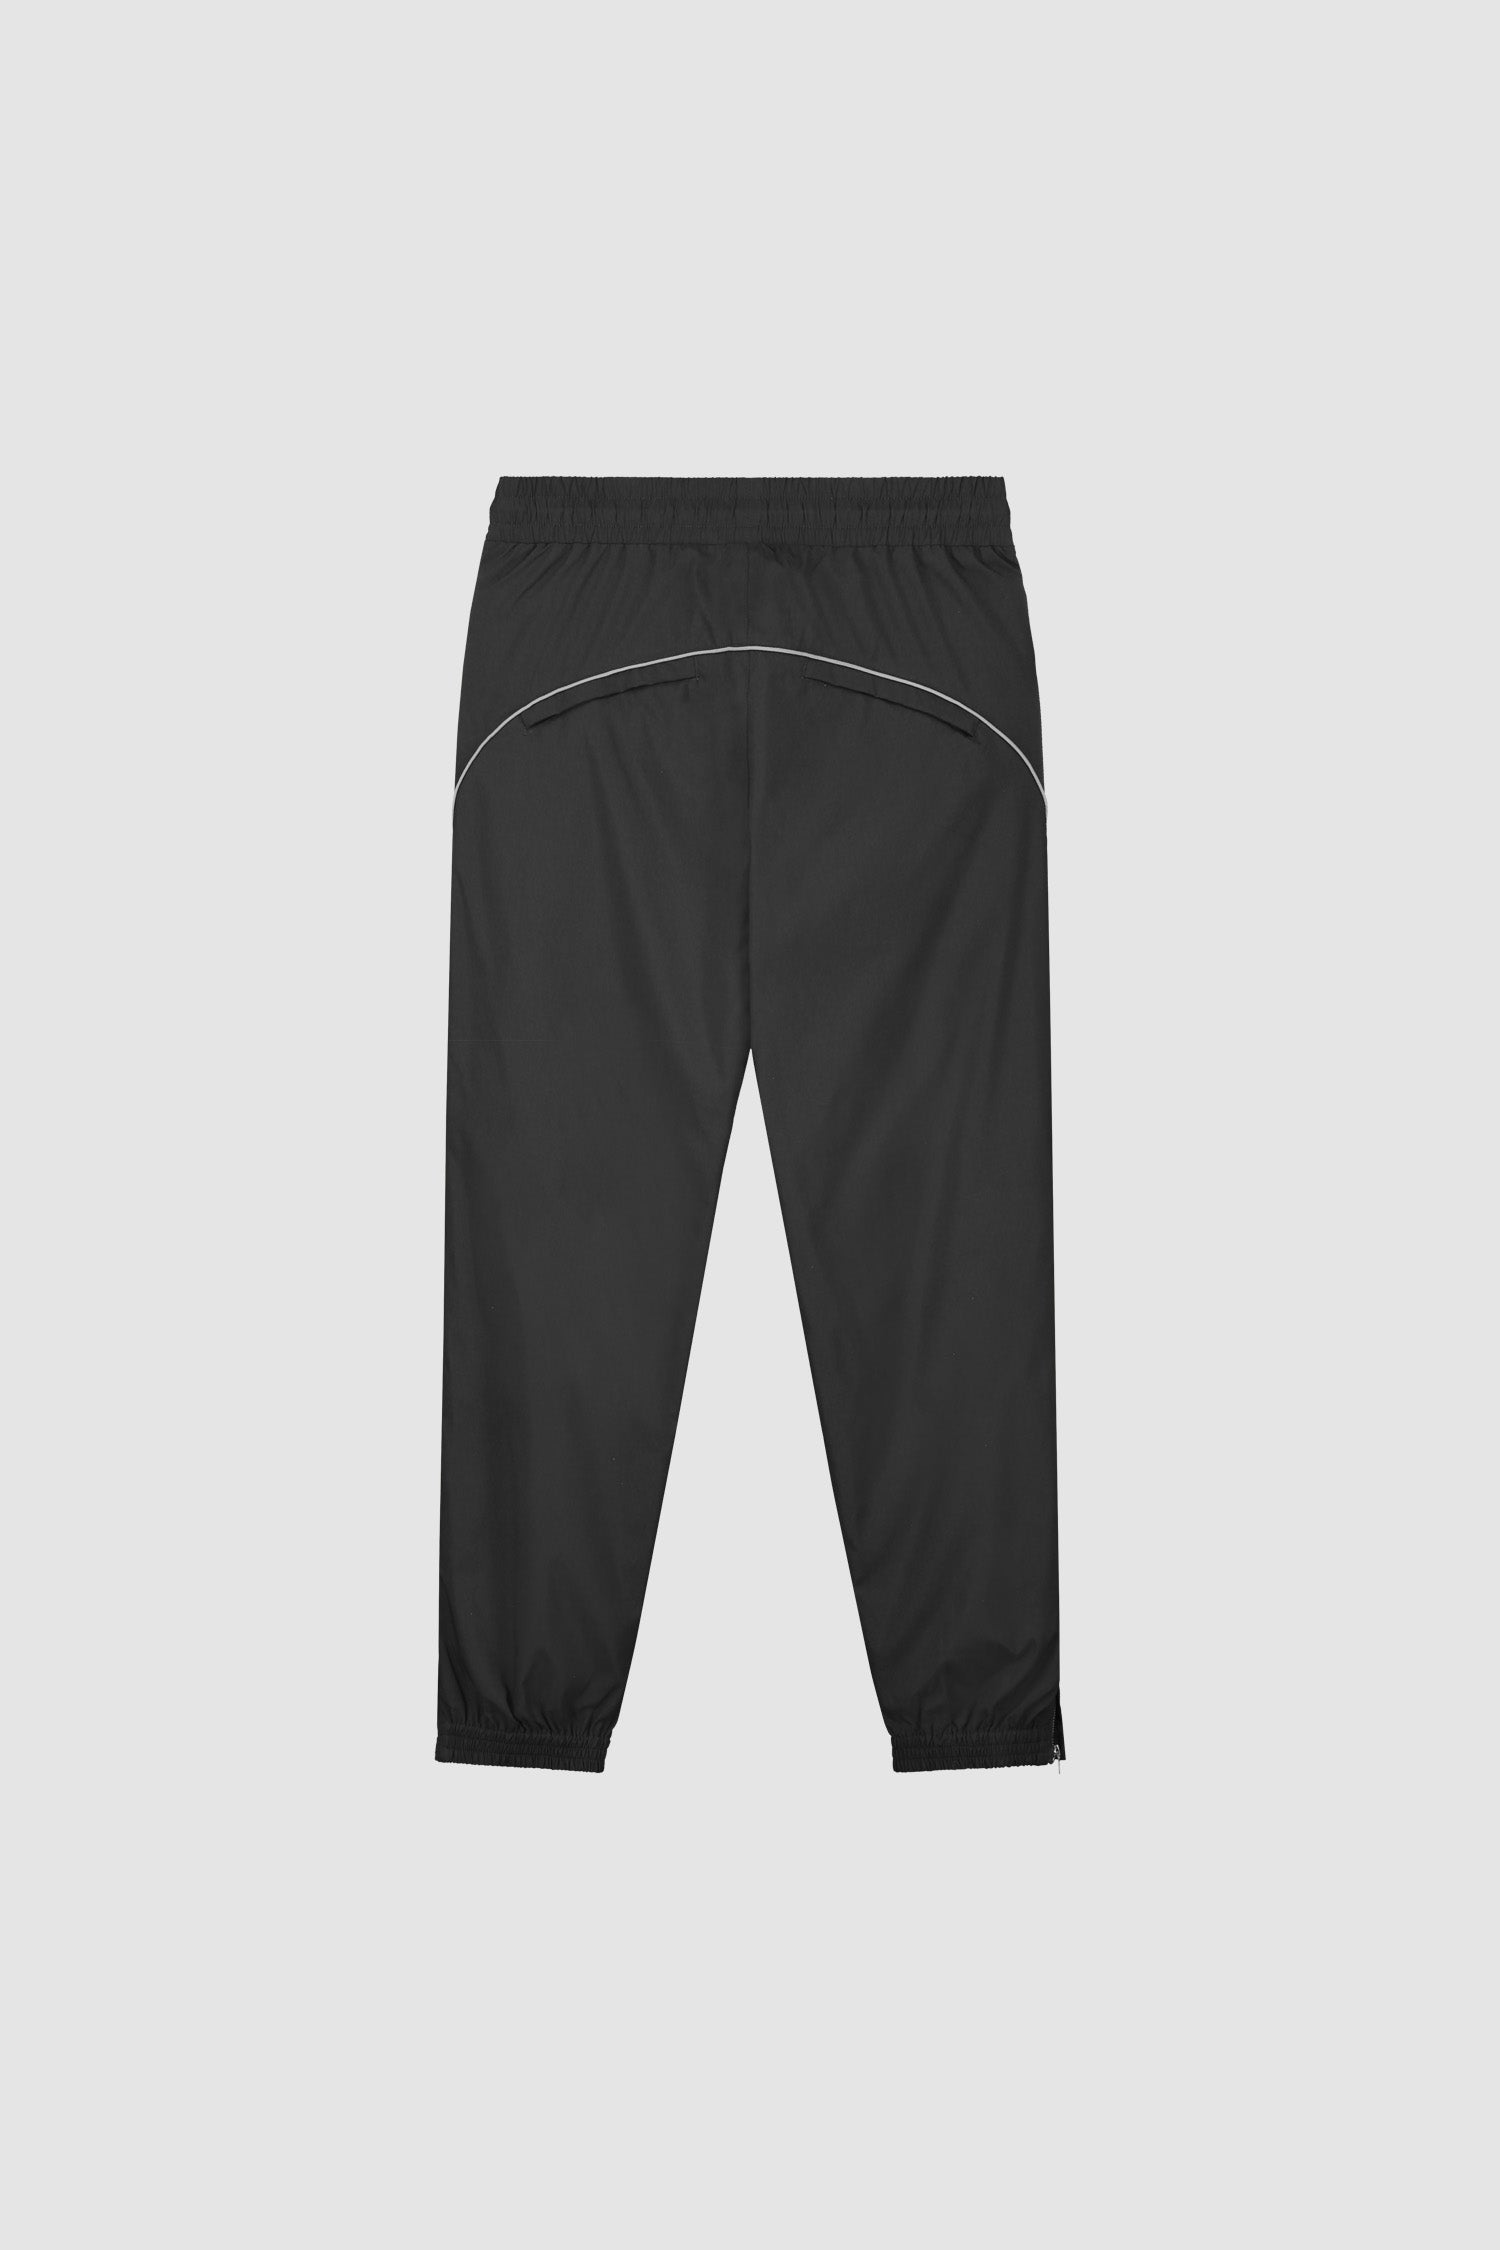 Pantalon Jordan AW23 - Noir/Gris